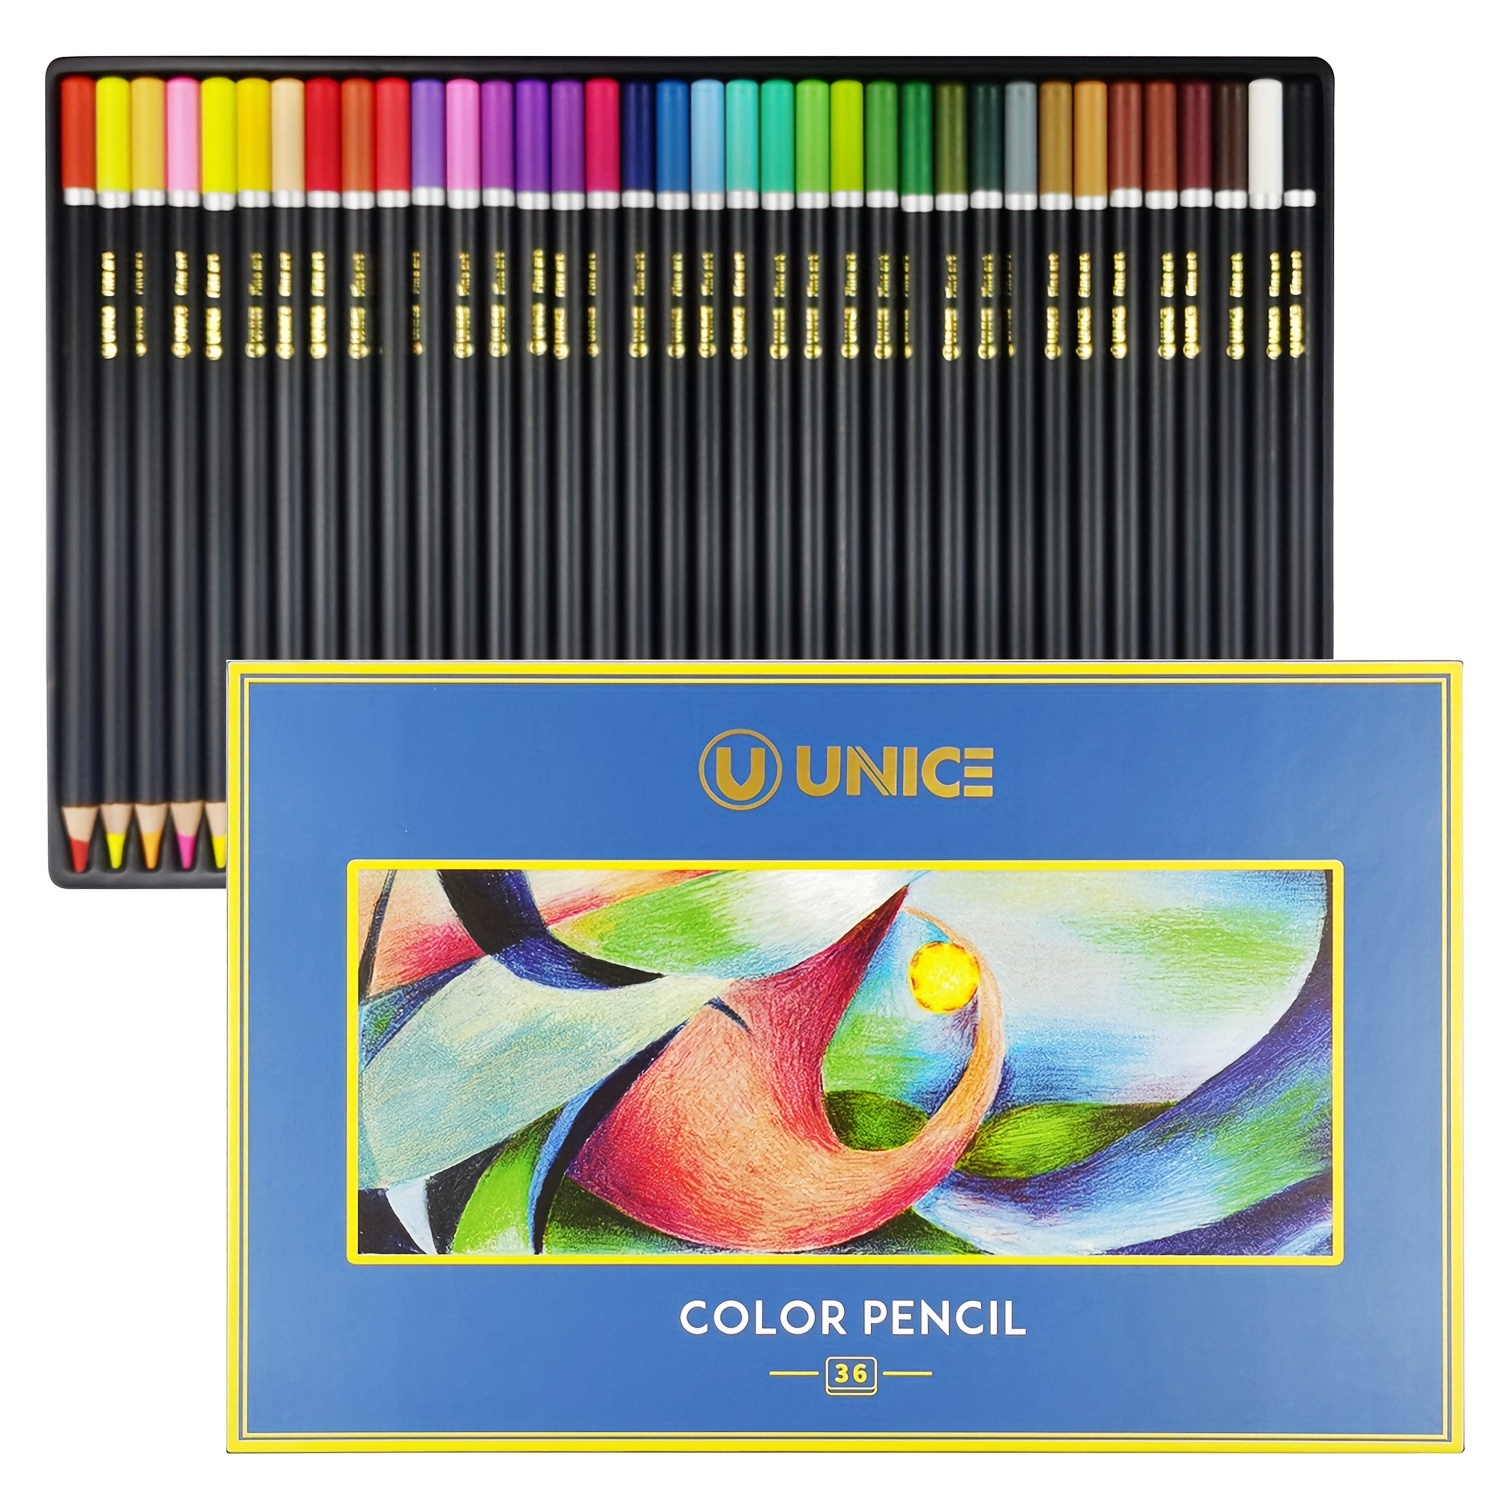 Kit De Lapices De Colores Para Dibujar Y Esbozar 145Pcs, Professional Art  Supp